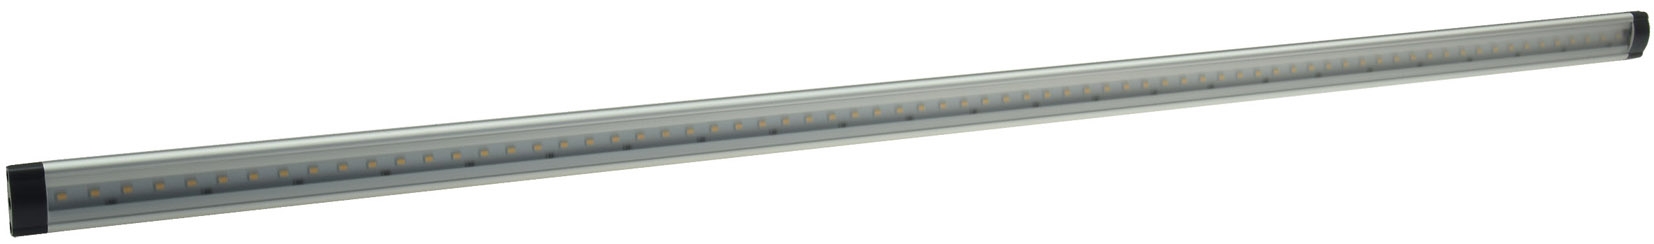 LED Unterbauleuchte "CT-FL80" 80cm745lm, 6W, 4200K / tageslicht weiß